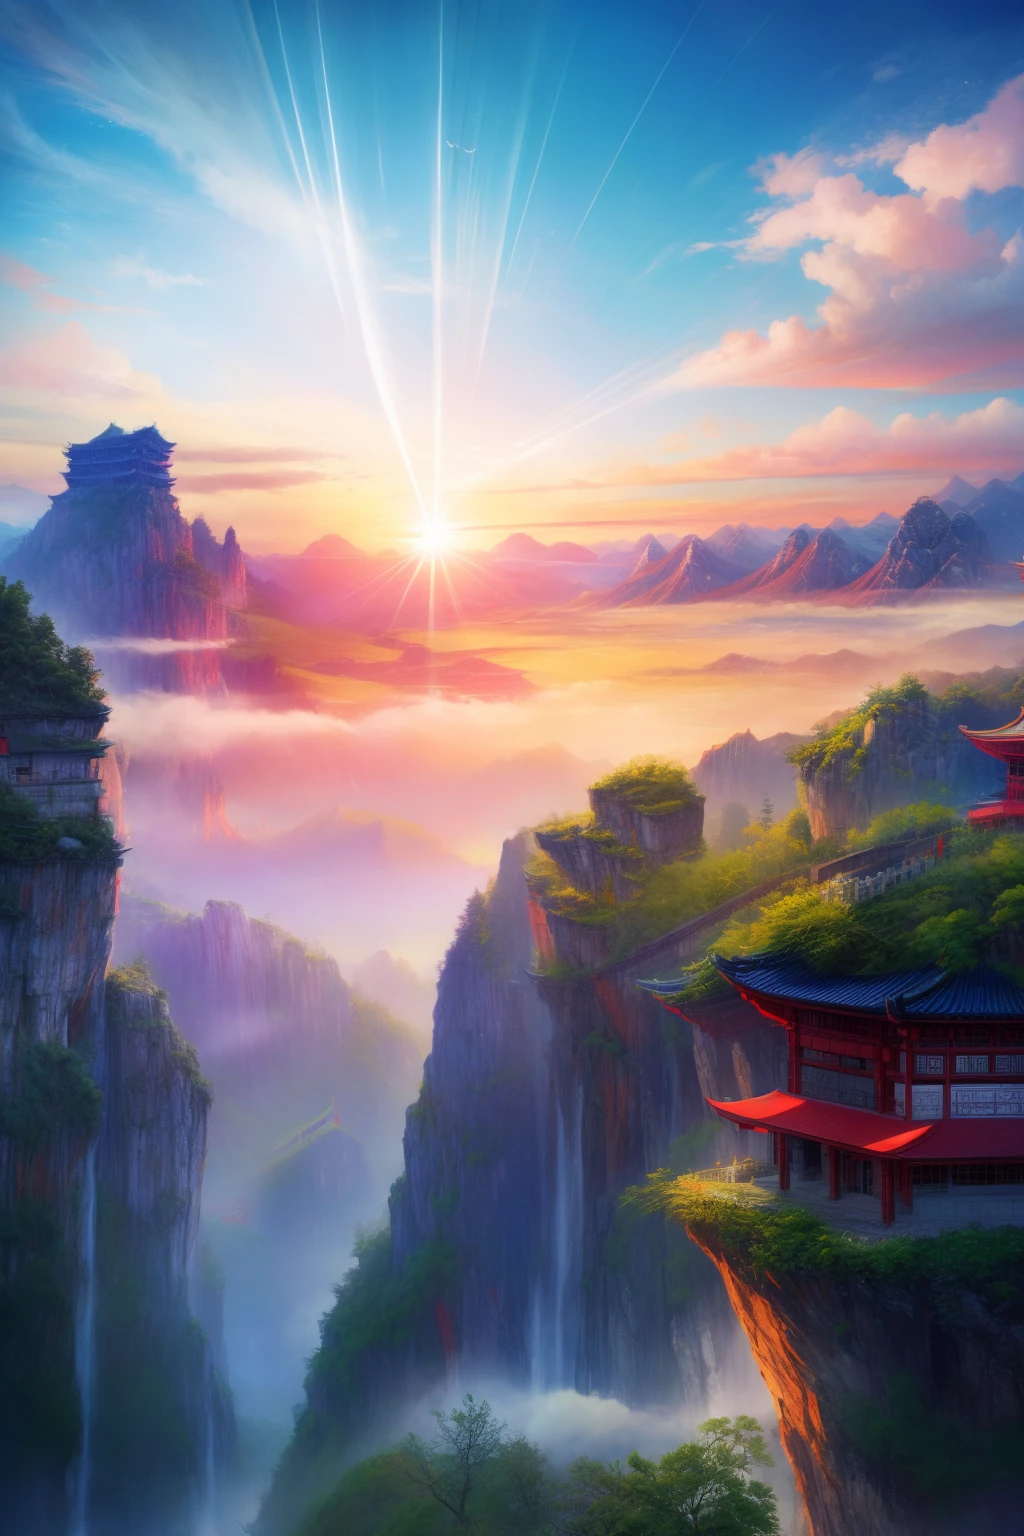 산 위에 작은 빨간 건물이 있어요, 작가：쳉 지아수이, 중국 풍경, 작가：장 위안, 놀라운 풍경 이미지, 이른 아침 장가계, 작가：류하이수, 레이먼드 한, 숨막히는 산, 작가：샤용, 떠다니는 산, 믿을 수 없을 정도로 아름다운, by 렌 시옹, 장가계 국가삼림공원